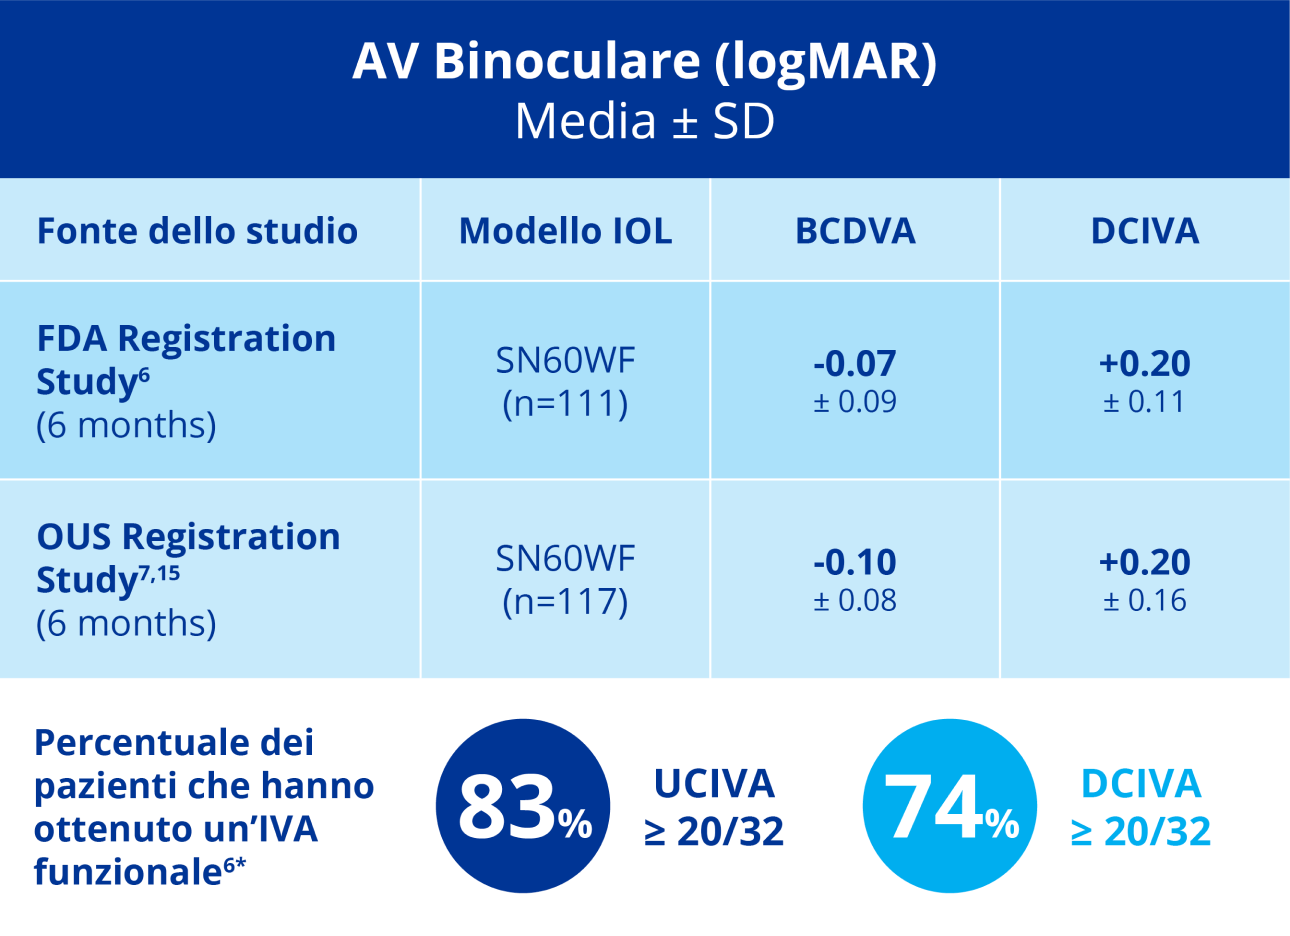 Grafico di colore blu che illustra i risultati di due studi di registrazione Vivity utilizzando la IOL monofocale AcrySof IQ come controllo. I callout indicano la percentuale di pazienti che hanno raggiunto un'IVA funzionale; l'83% dei pazienti ha raggiunto un'UCIVA ≥20/32 e il 74% dei pazienti ha raggiunto una DCIVA ≥20/32.